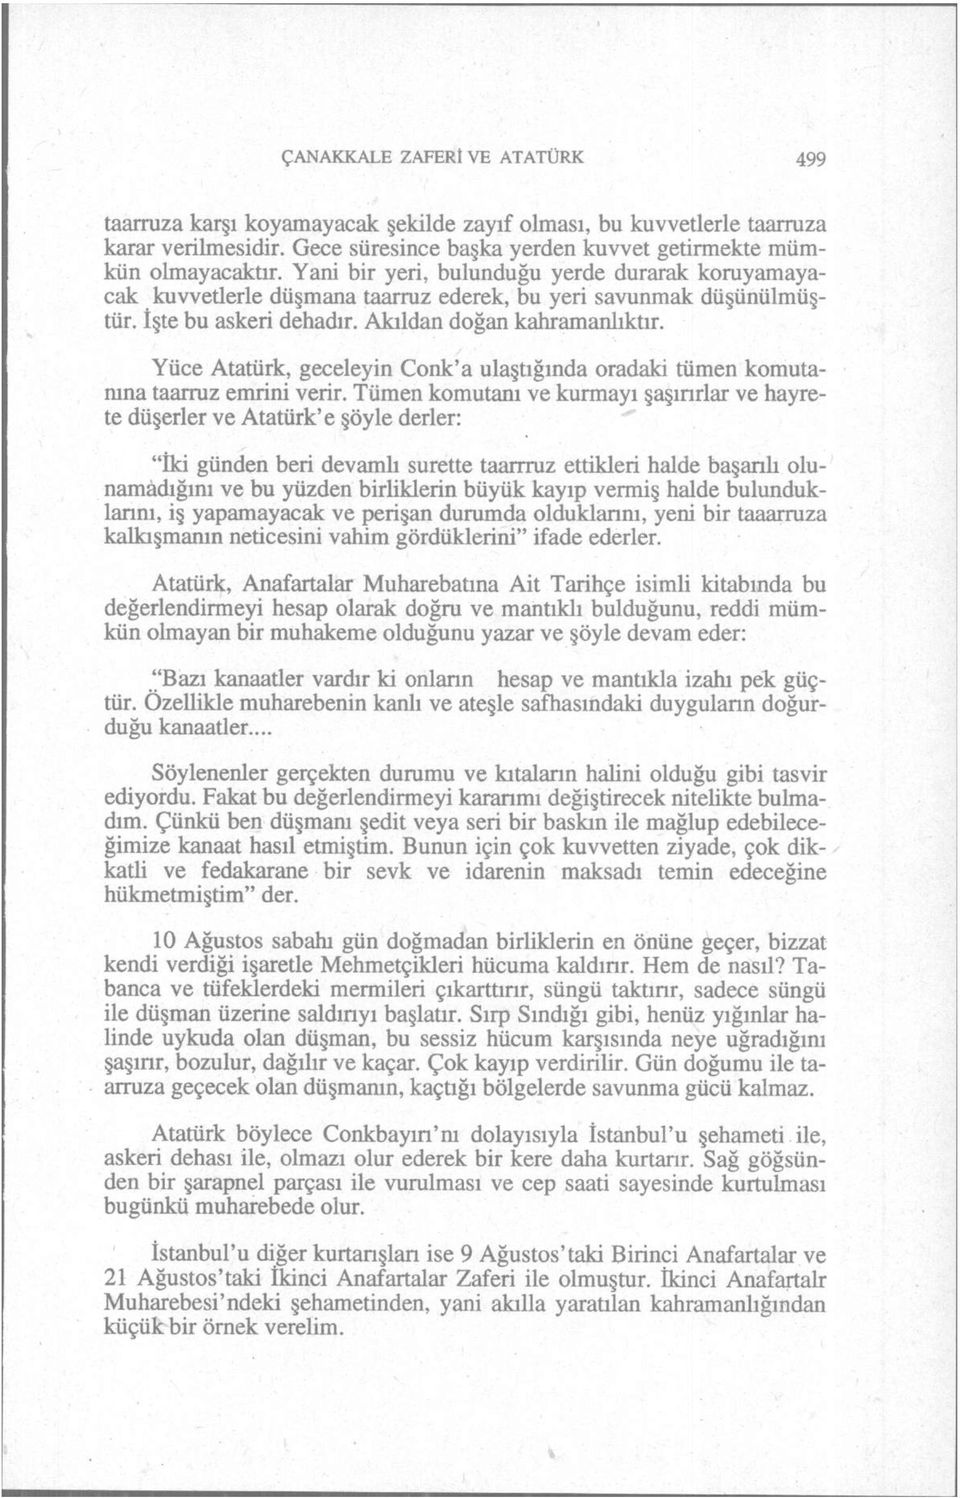 Yüce Atatürk, geceleyin Conk'a ulaştığında oradaki tümen komutanına taarruz emrini verir.